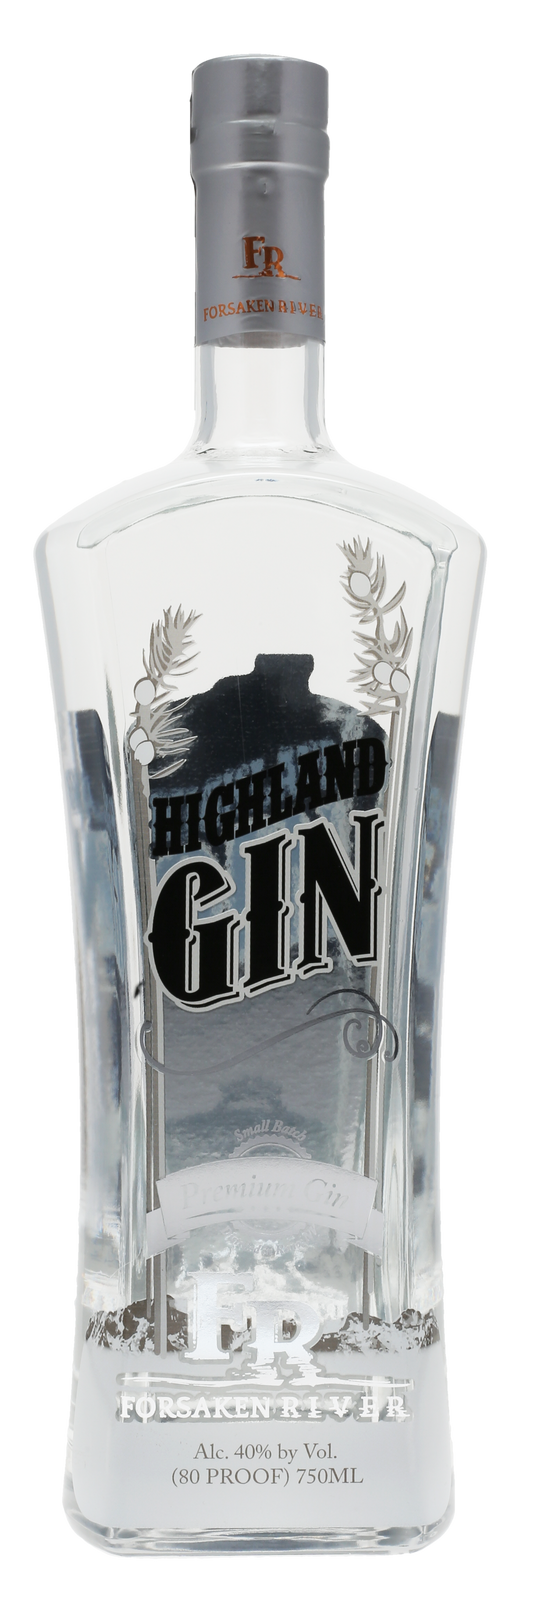 Highland Gin